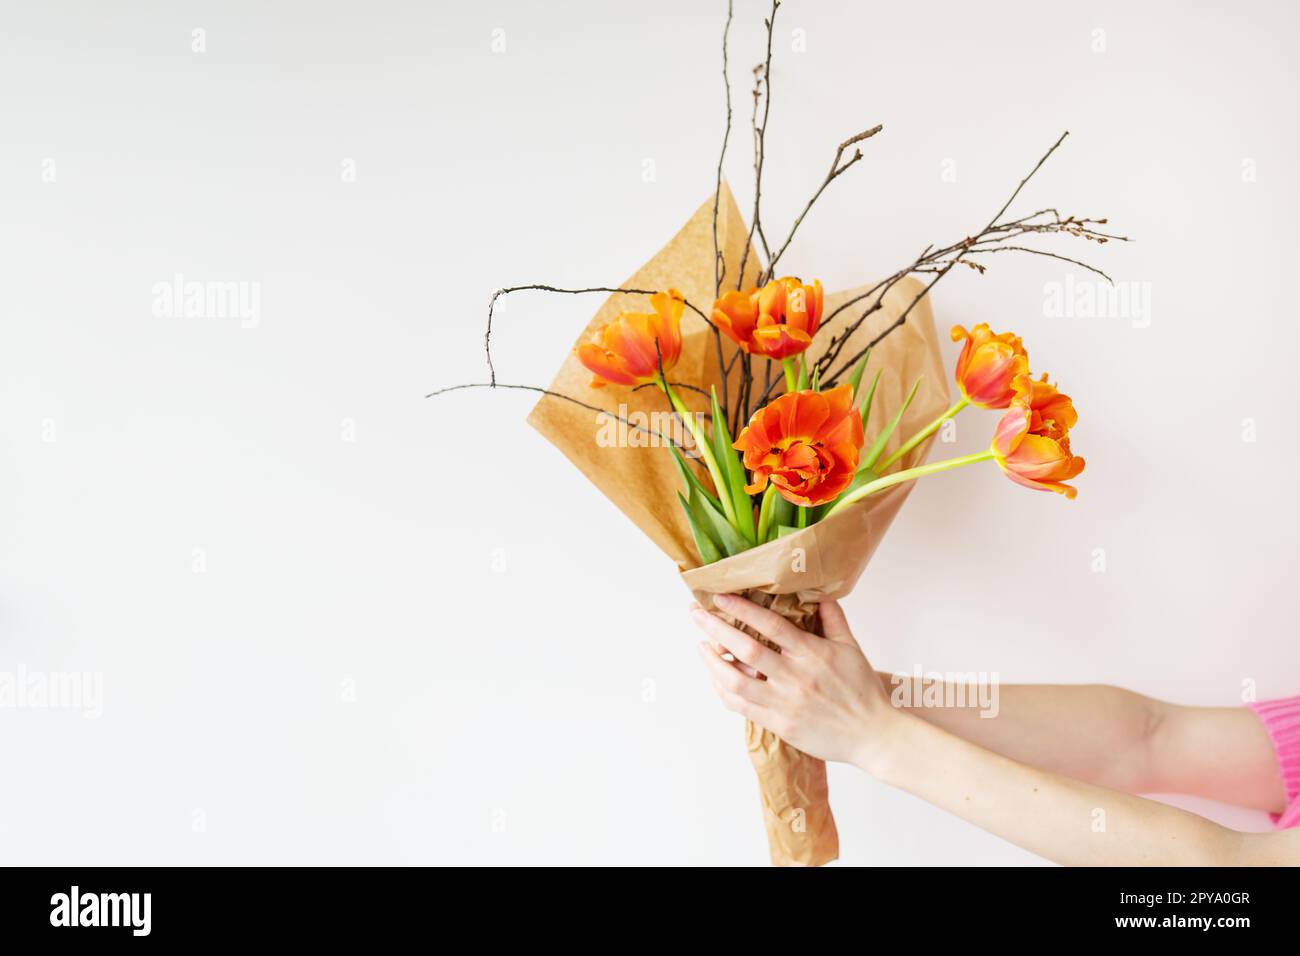 Das Mädchen hält in ihren Händen einen sehr schönen Frühlingsstrauß aus orangefarbenen Pfingstropfen zusammen mit Zweigen junger Kirschen. Stockfoto